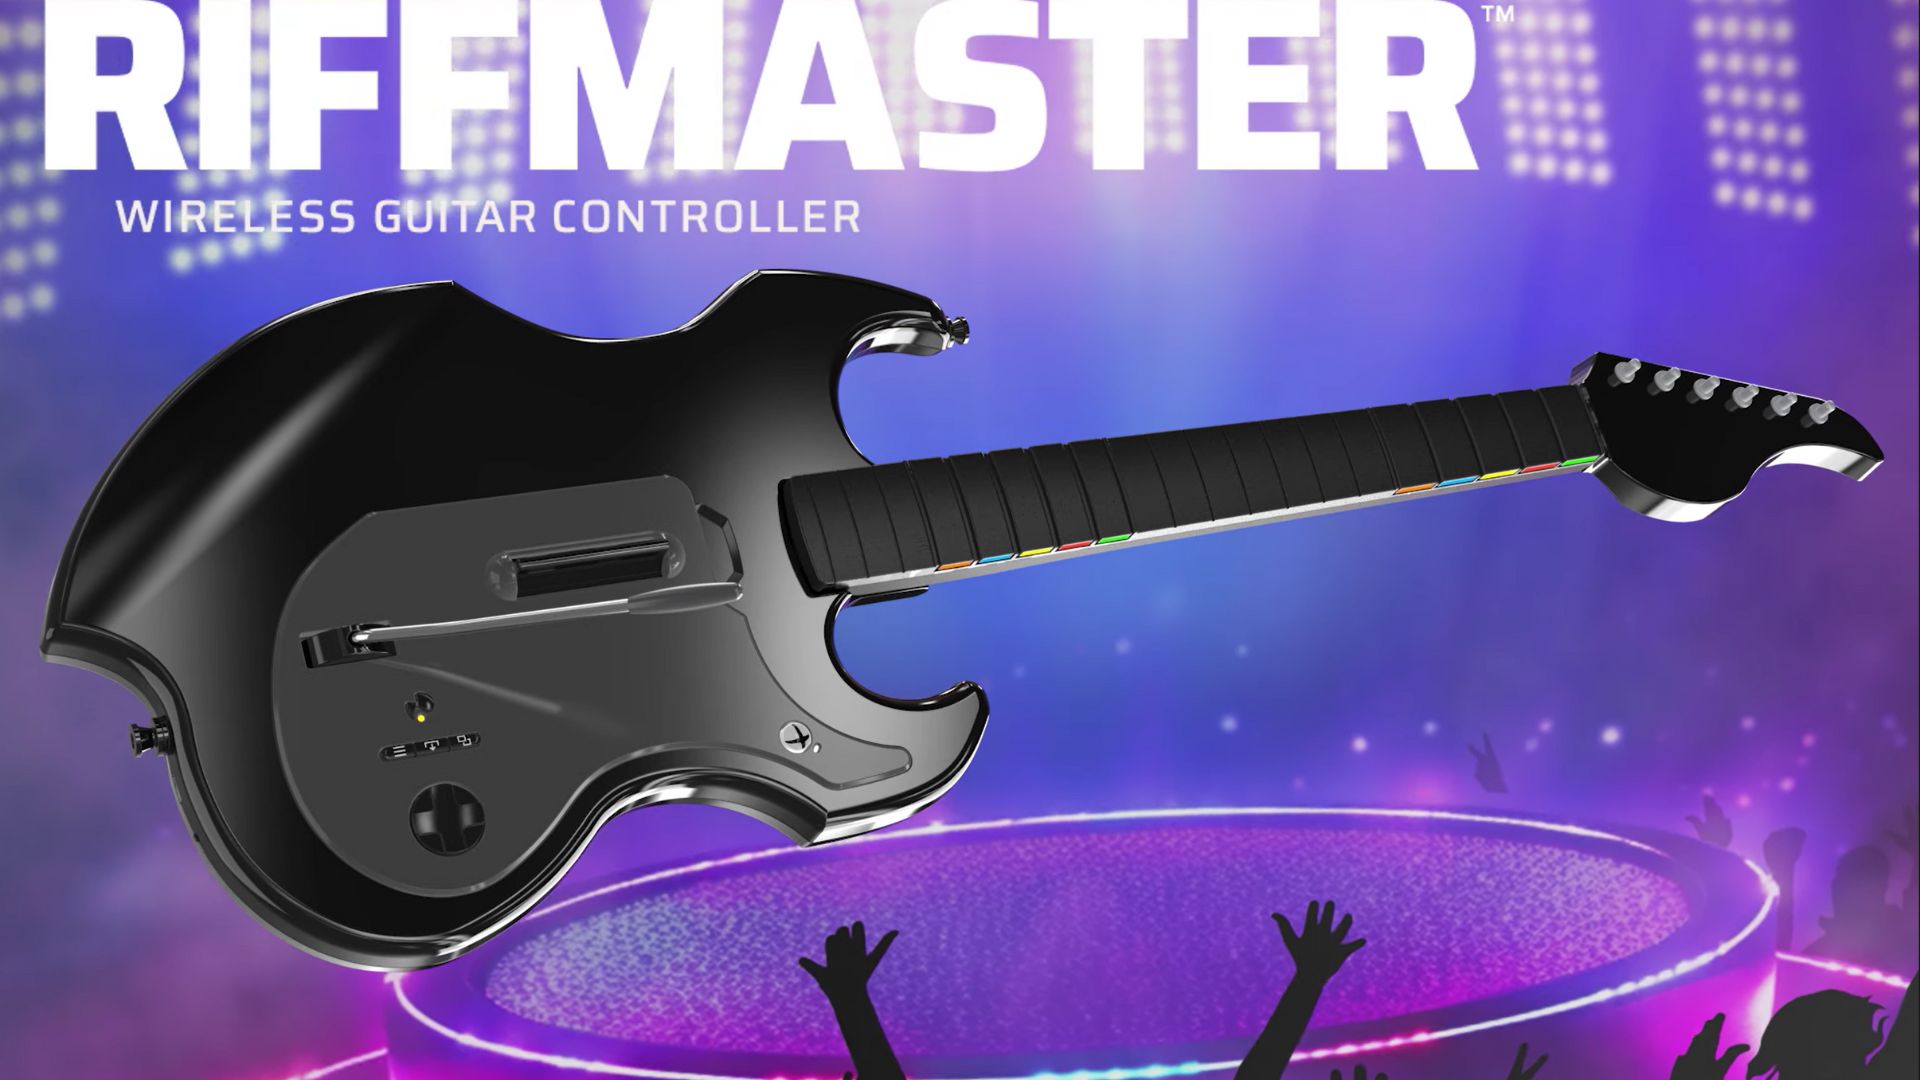 Image marketing de la guitare sans fil PDP RIFFMASTER tirée de la bande-annonce du contrôleur